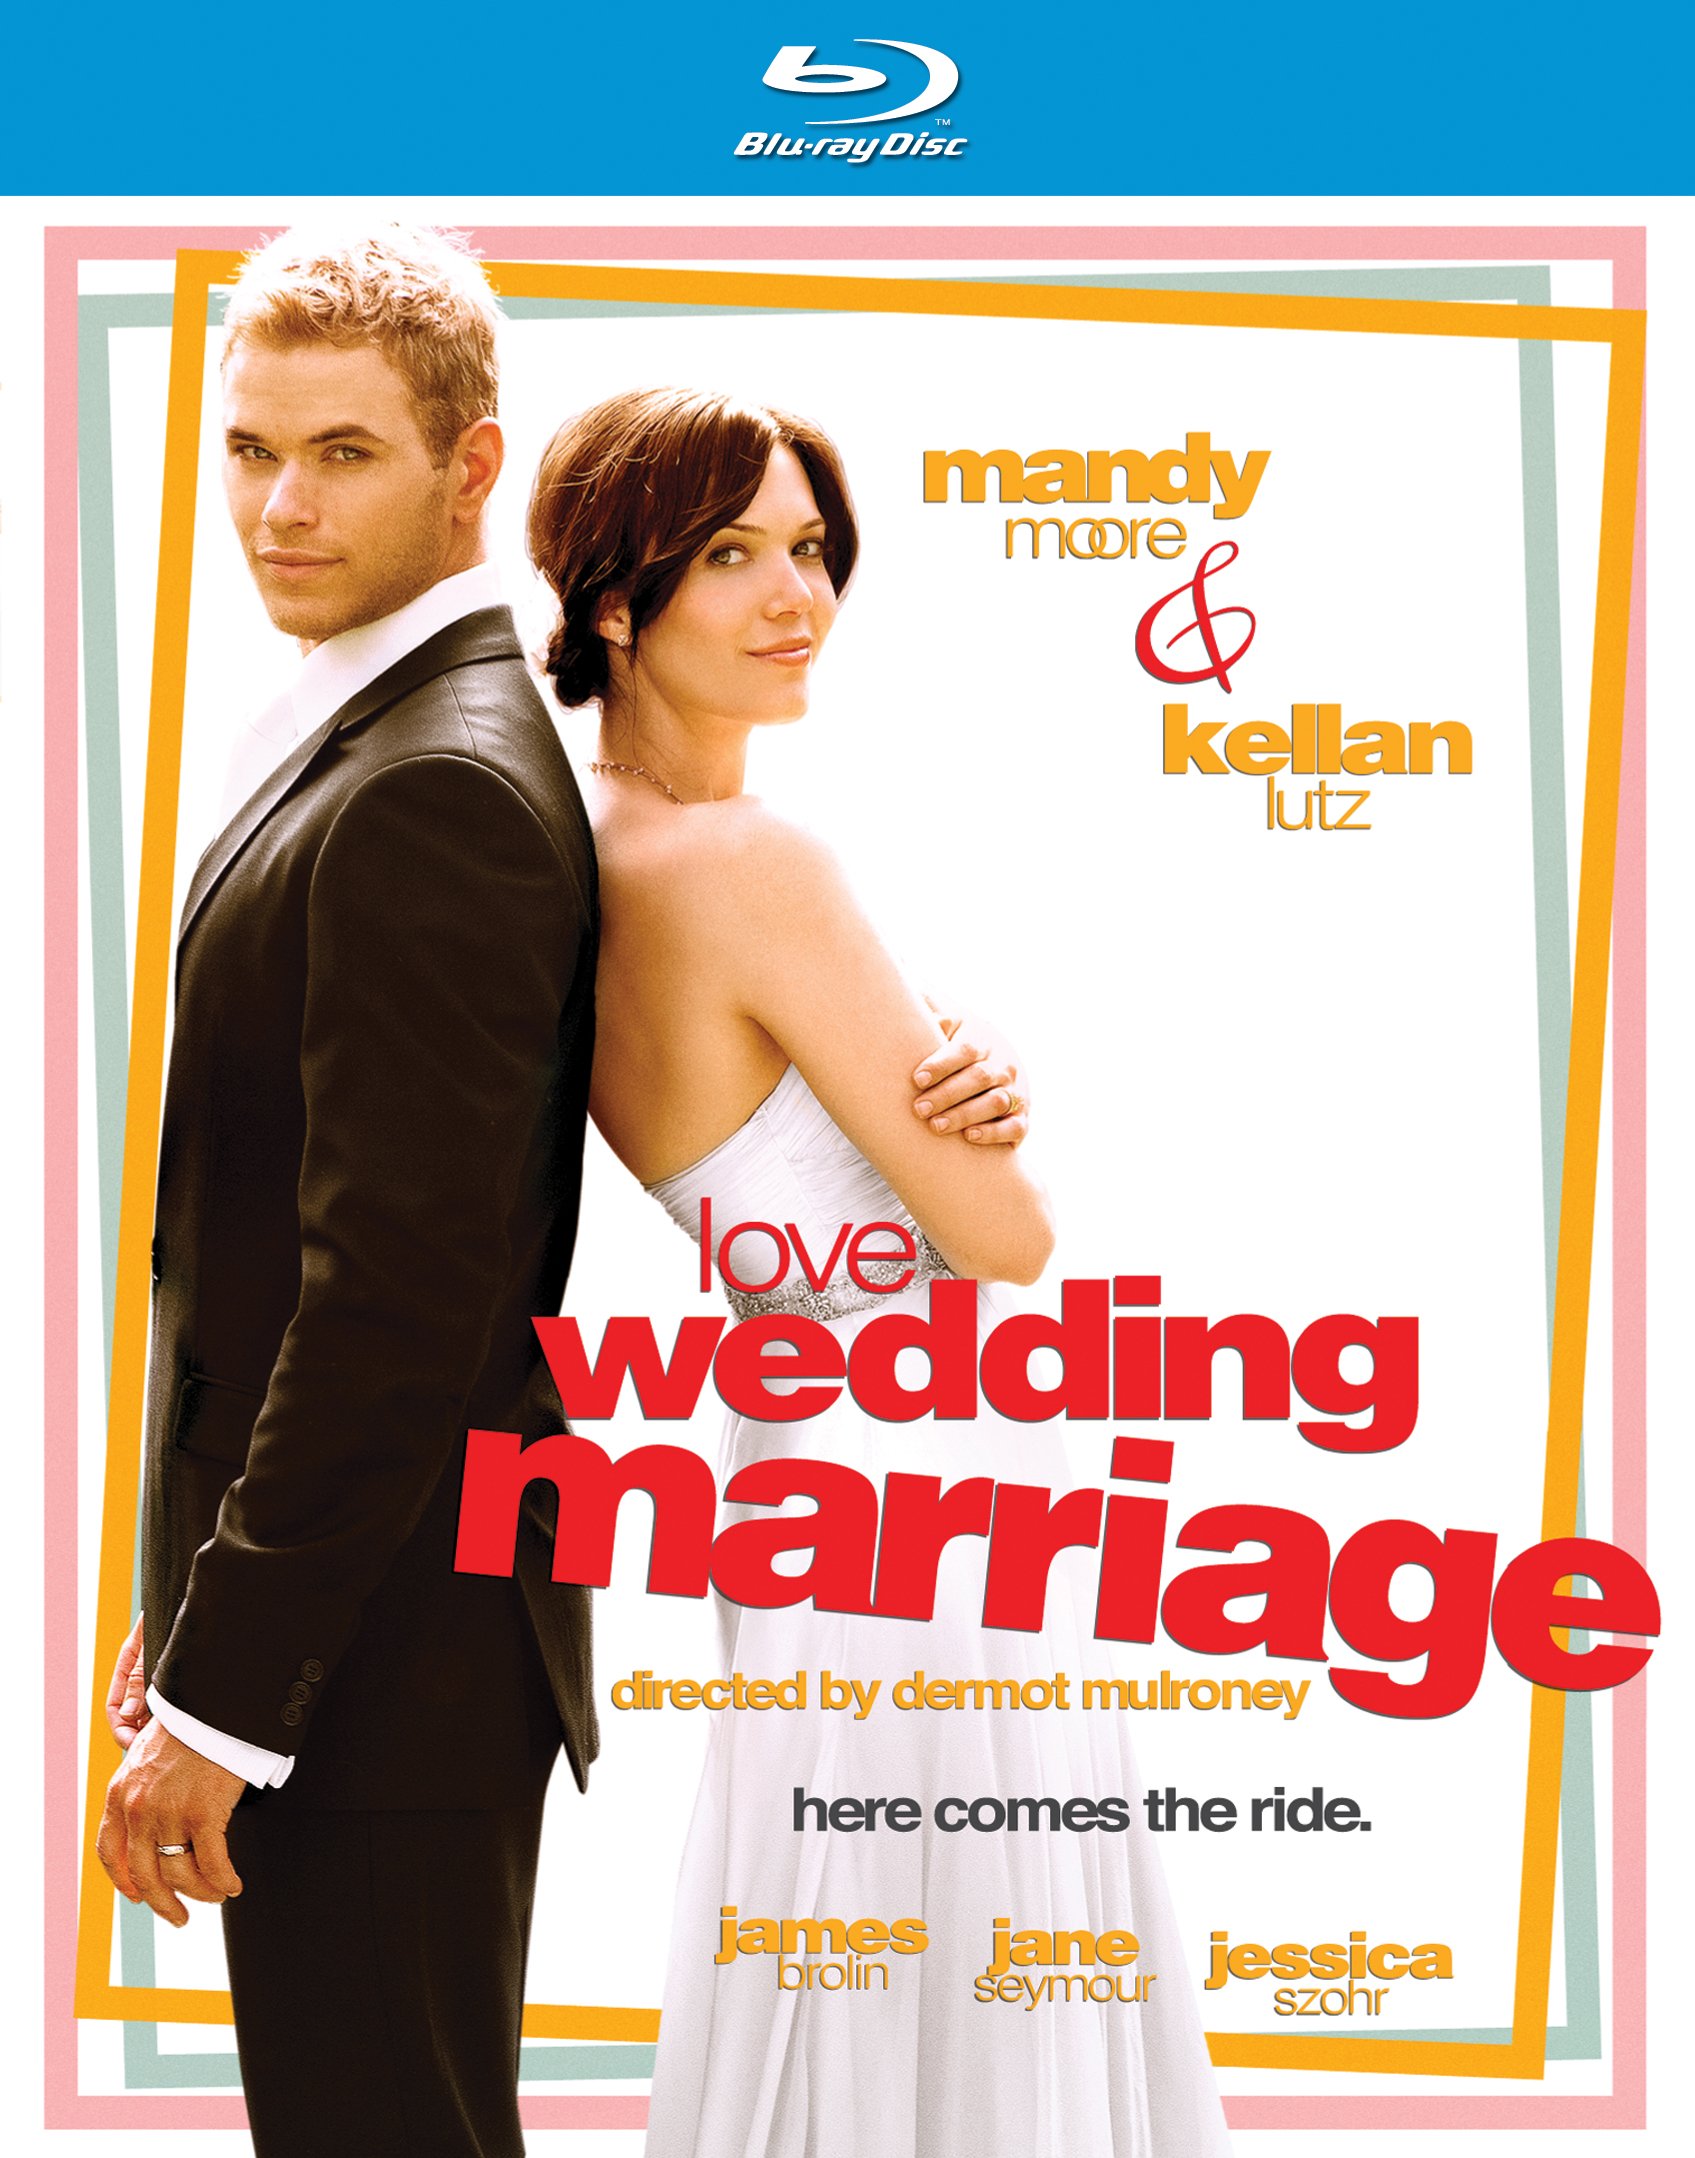 Любовь сперва. Сначала любовь, потом свадьба 2012 Постер. Сначала свадьба потом любовь 3. Just married Blu-ray Cover.